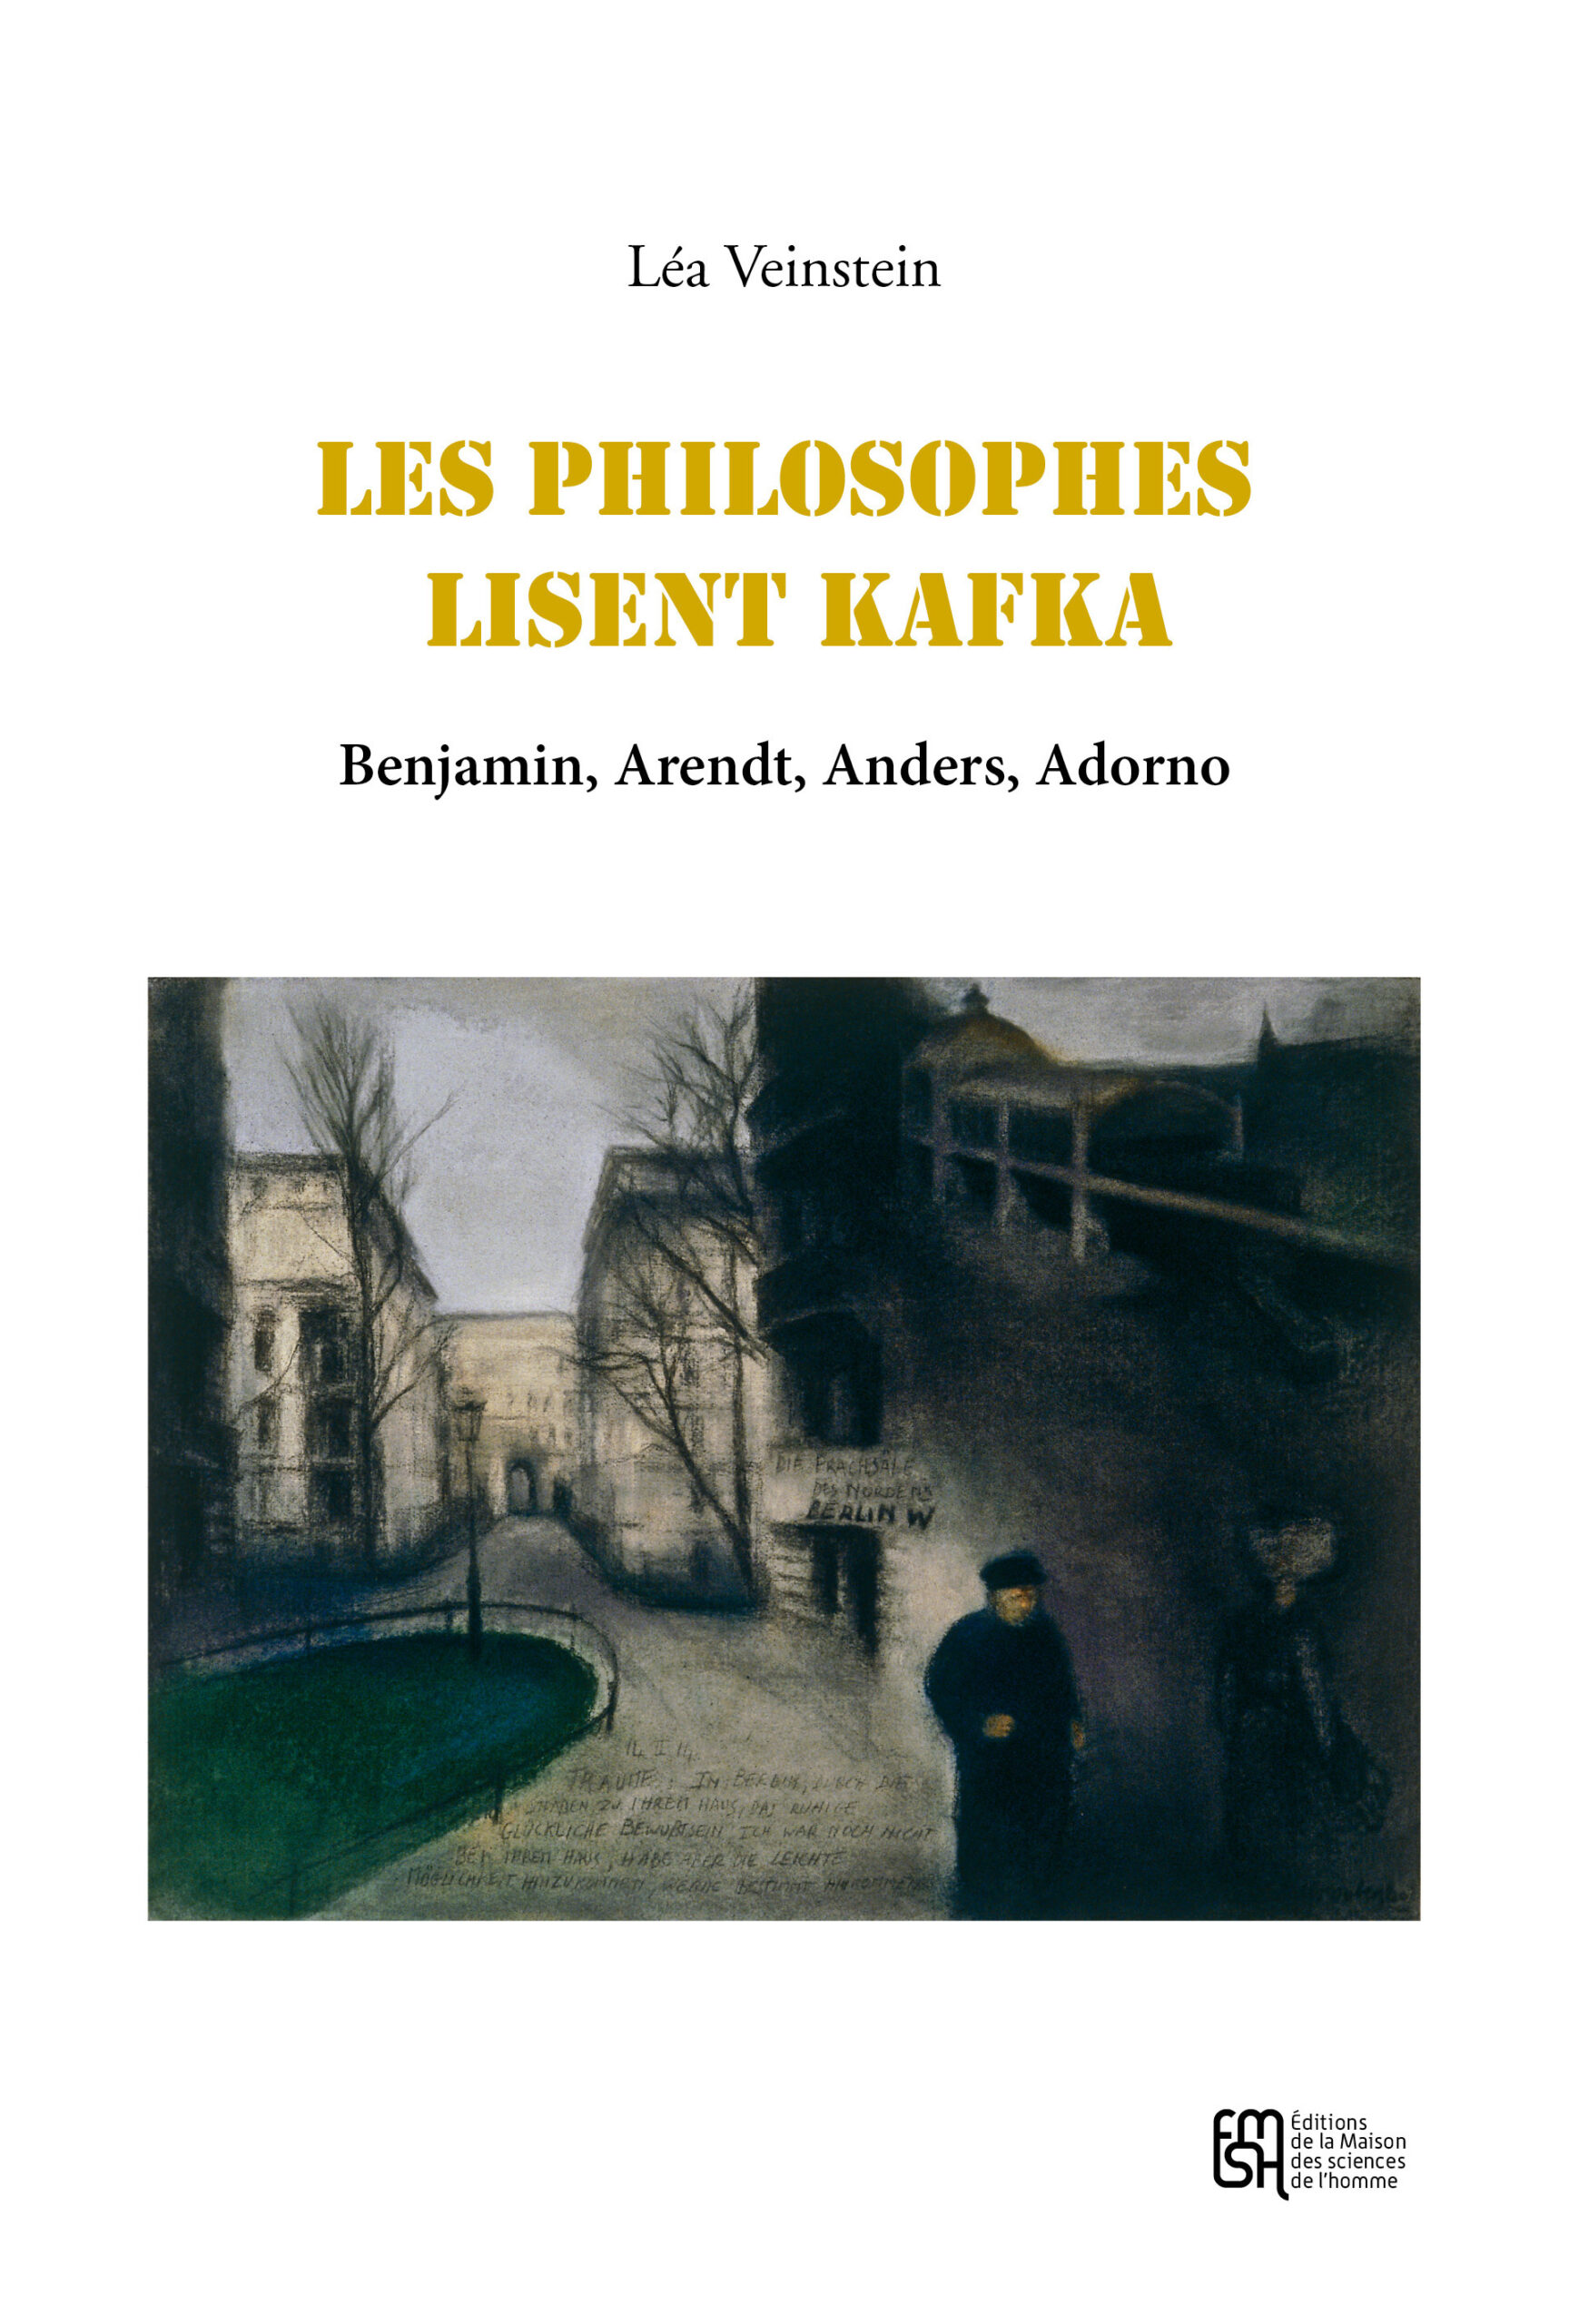 Les Philosophes lisent Kafka.